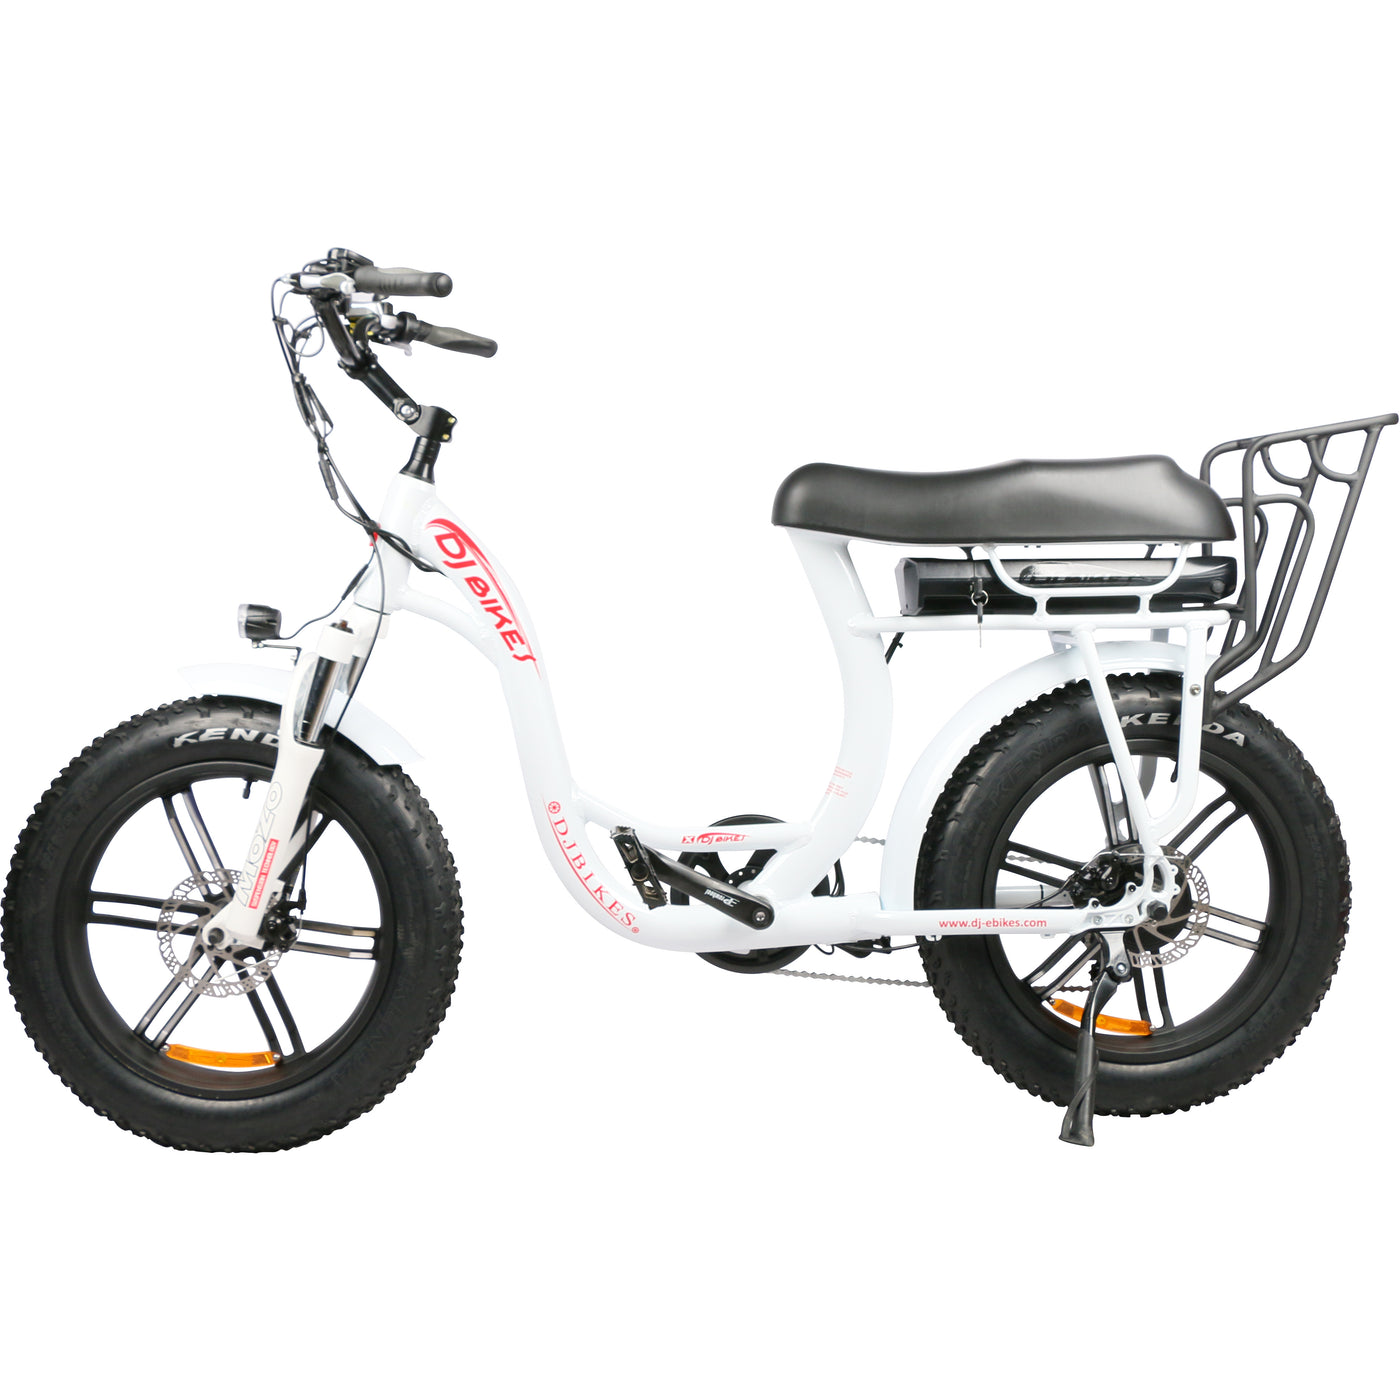 Electric Mini Bike, DJ Super Bike Step Thru, fat tire step thru mini bike style ebike